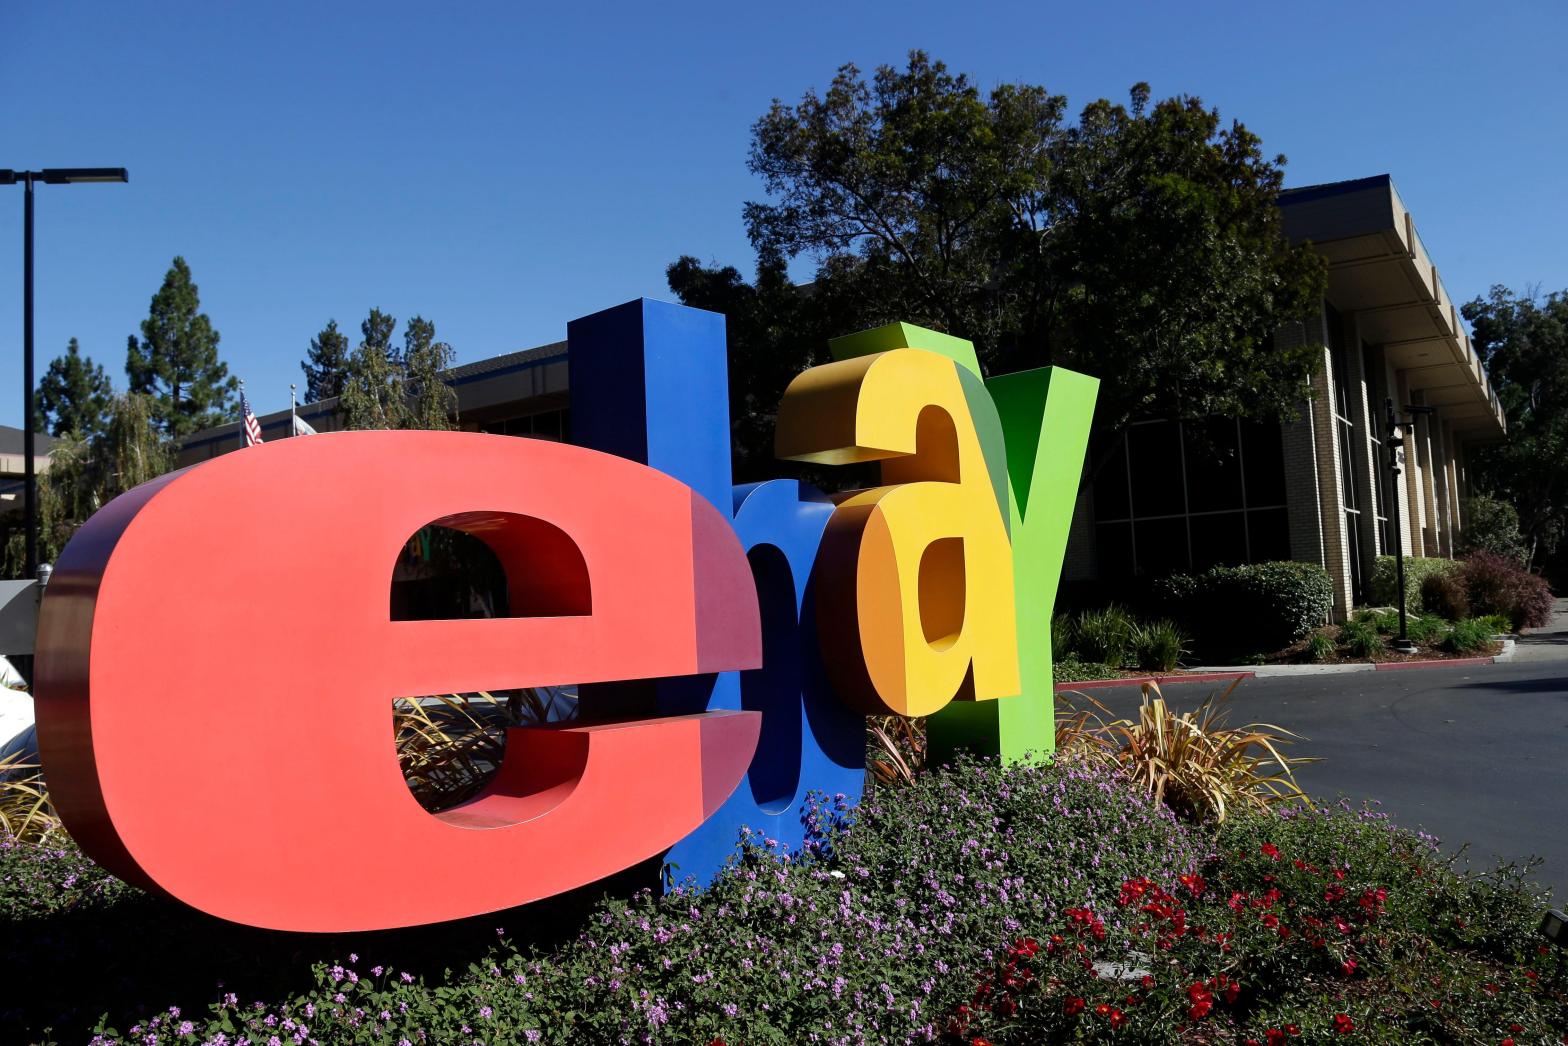 2 former eBay employees plead guilty in cyberstalking scheme against critic